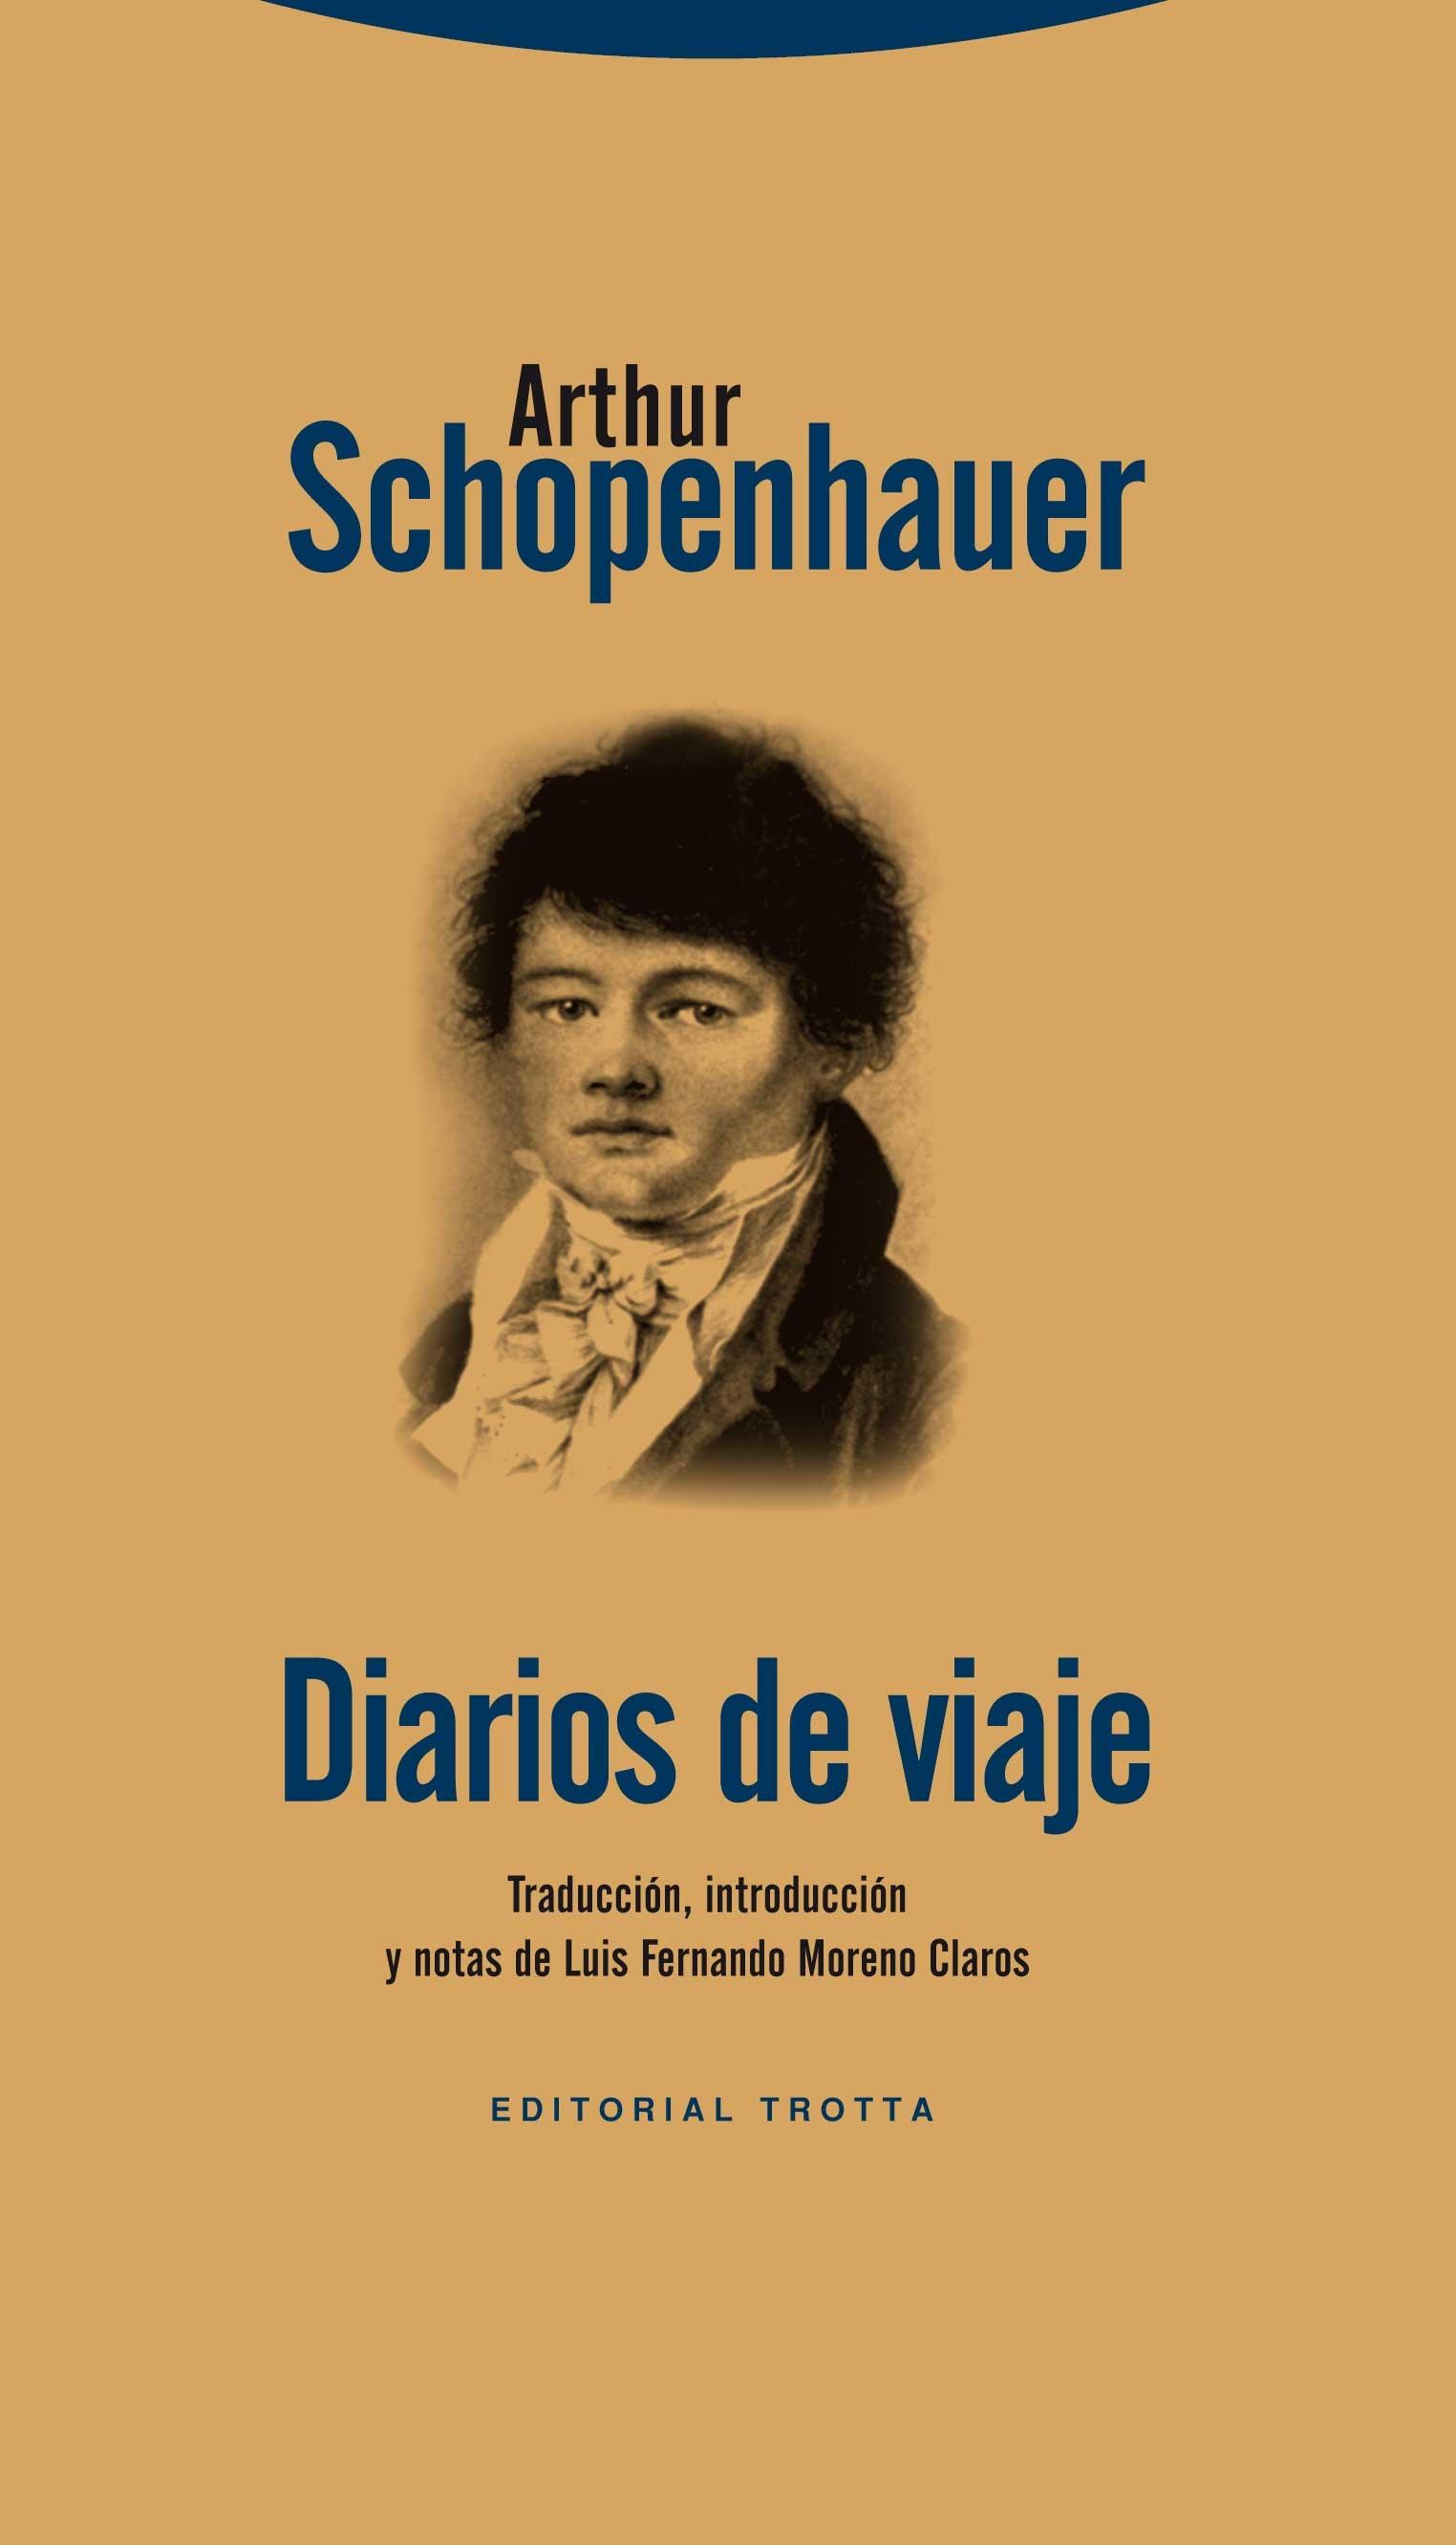 Diarios de viaje "Los Diarios de viaje de los años 1800 y 1803-1804". 